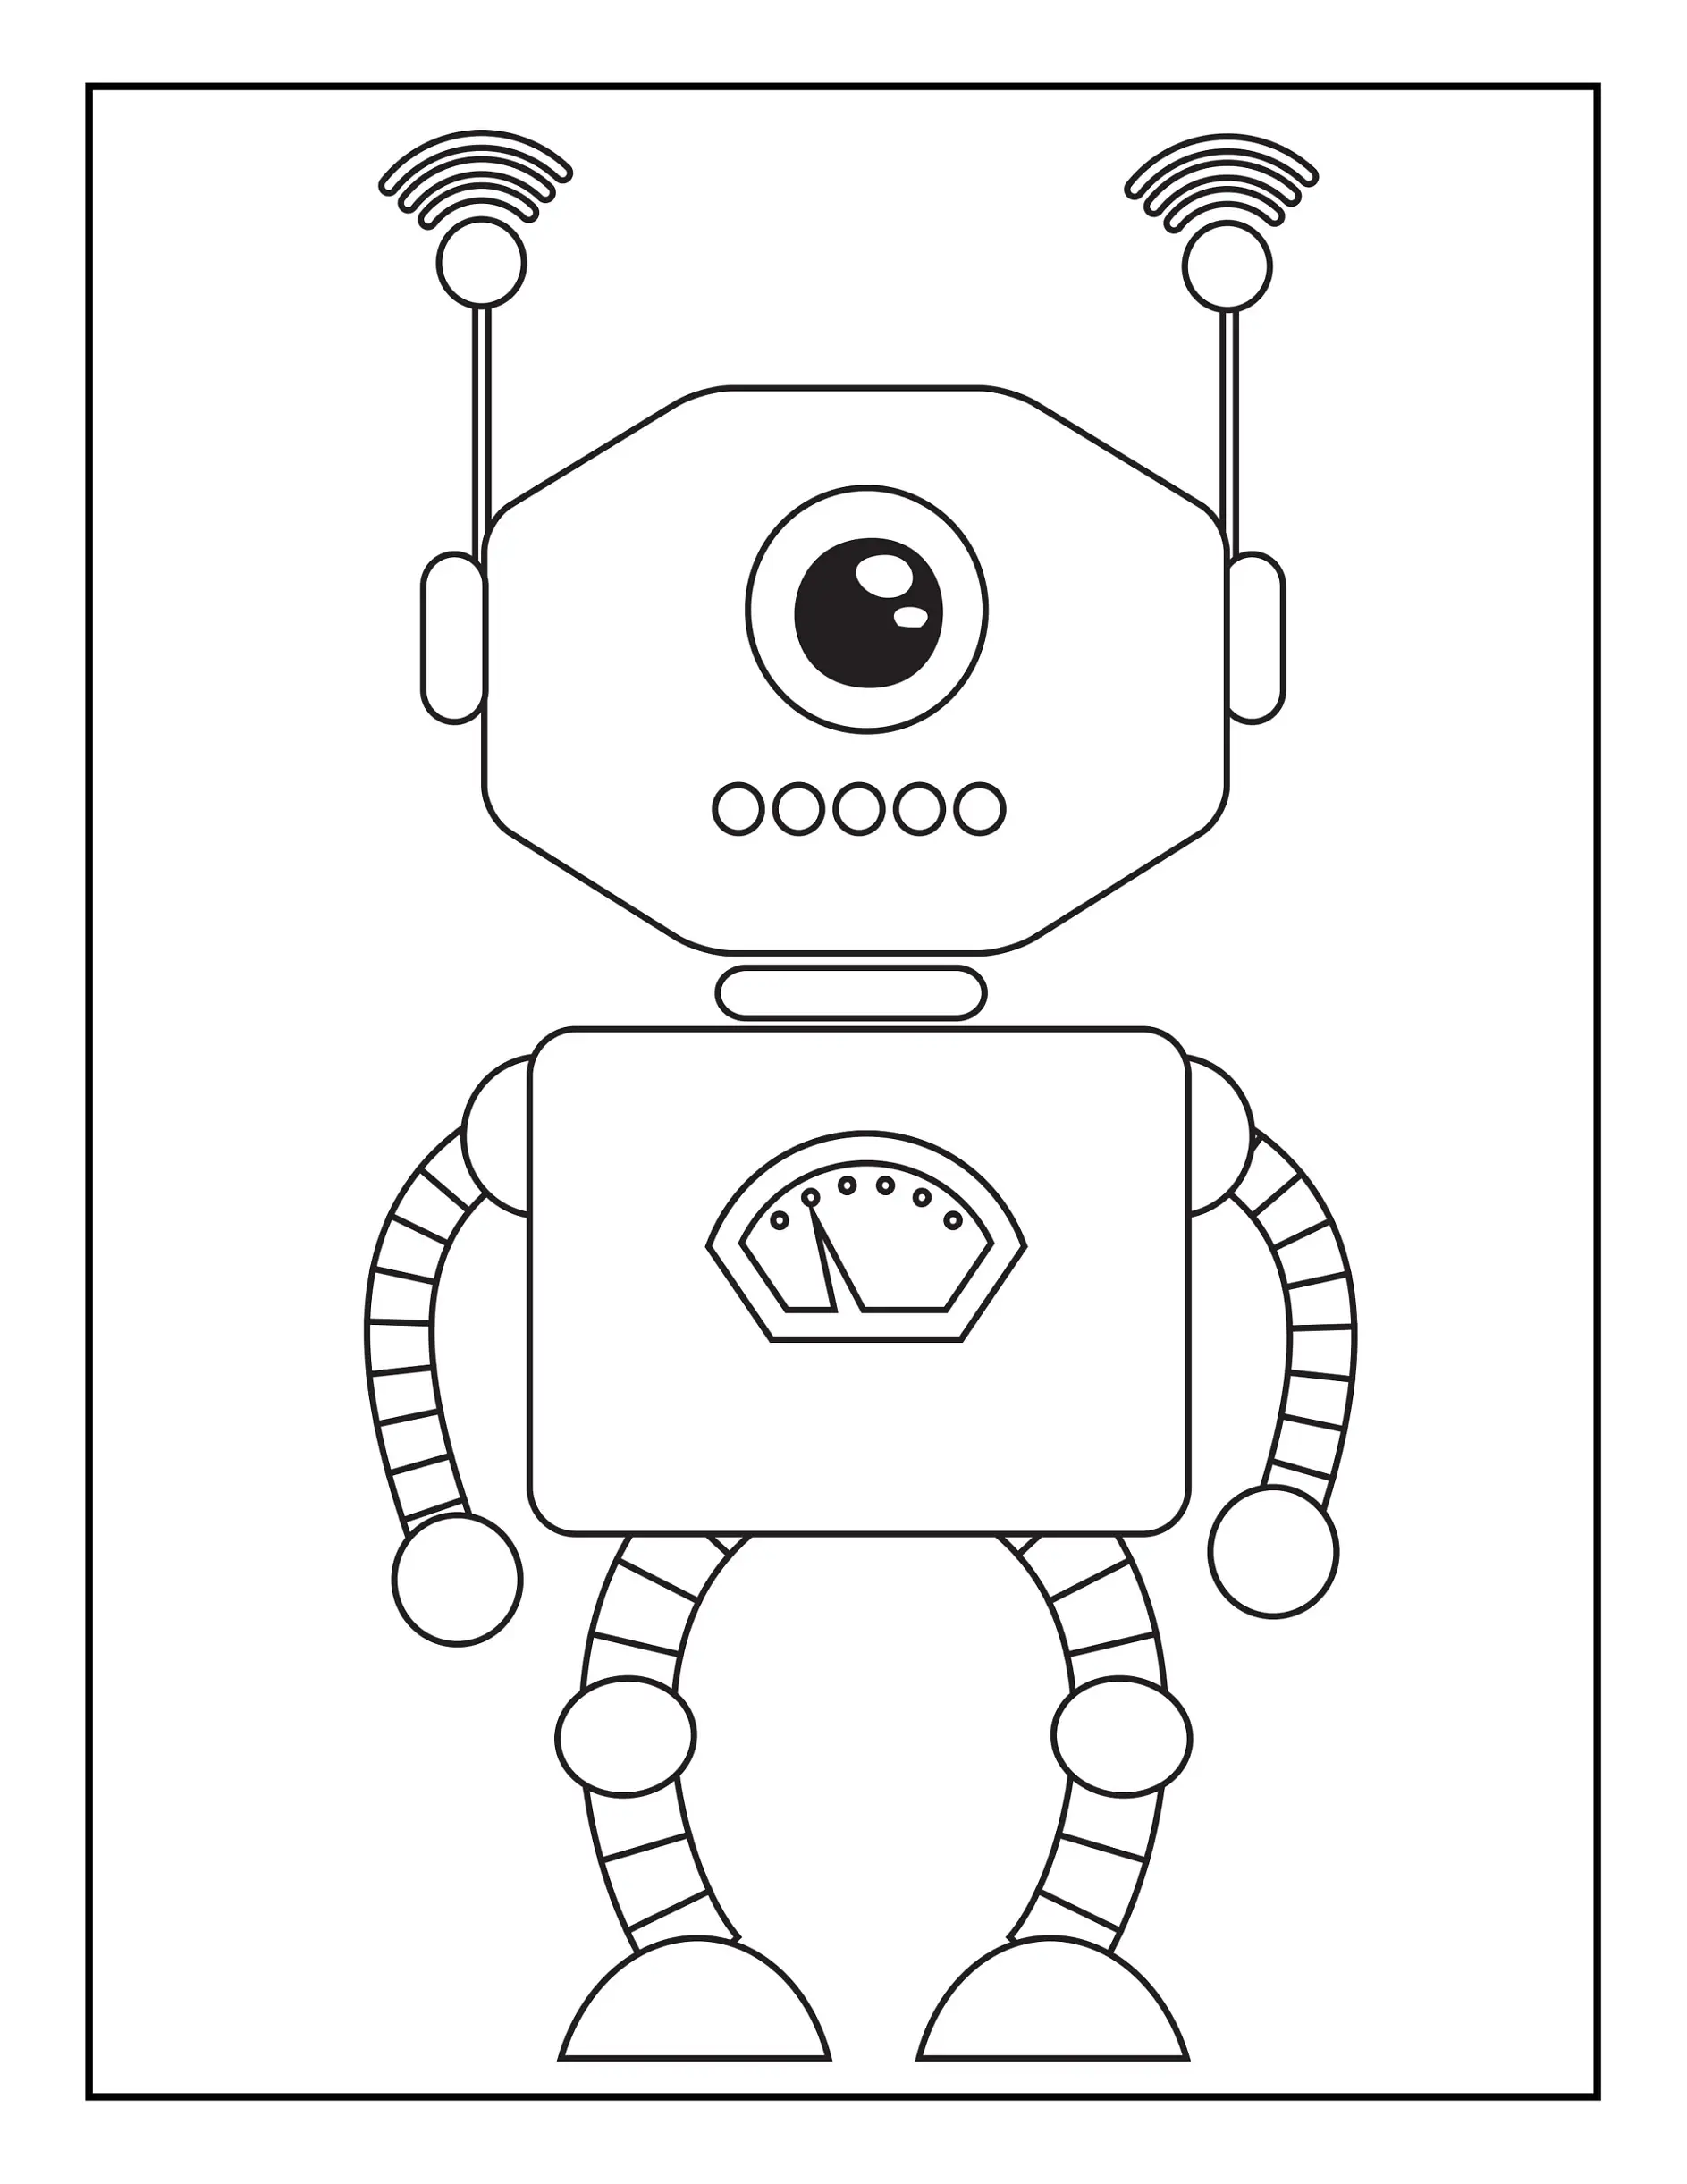 Ausmalbild Roboter mit einem Auge und Antennen